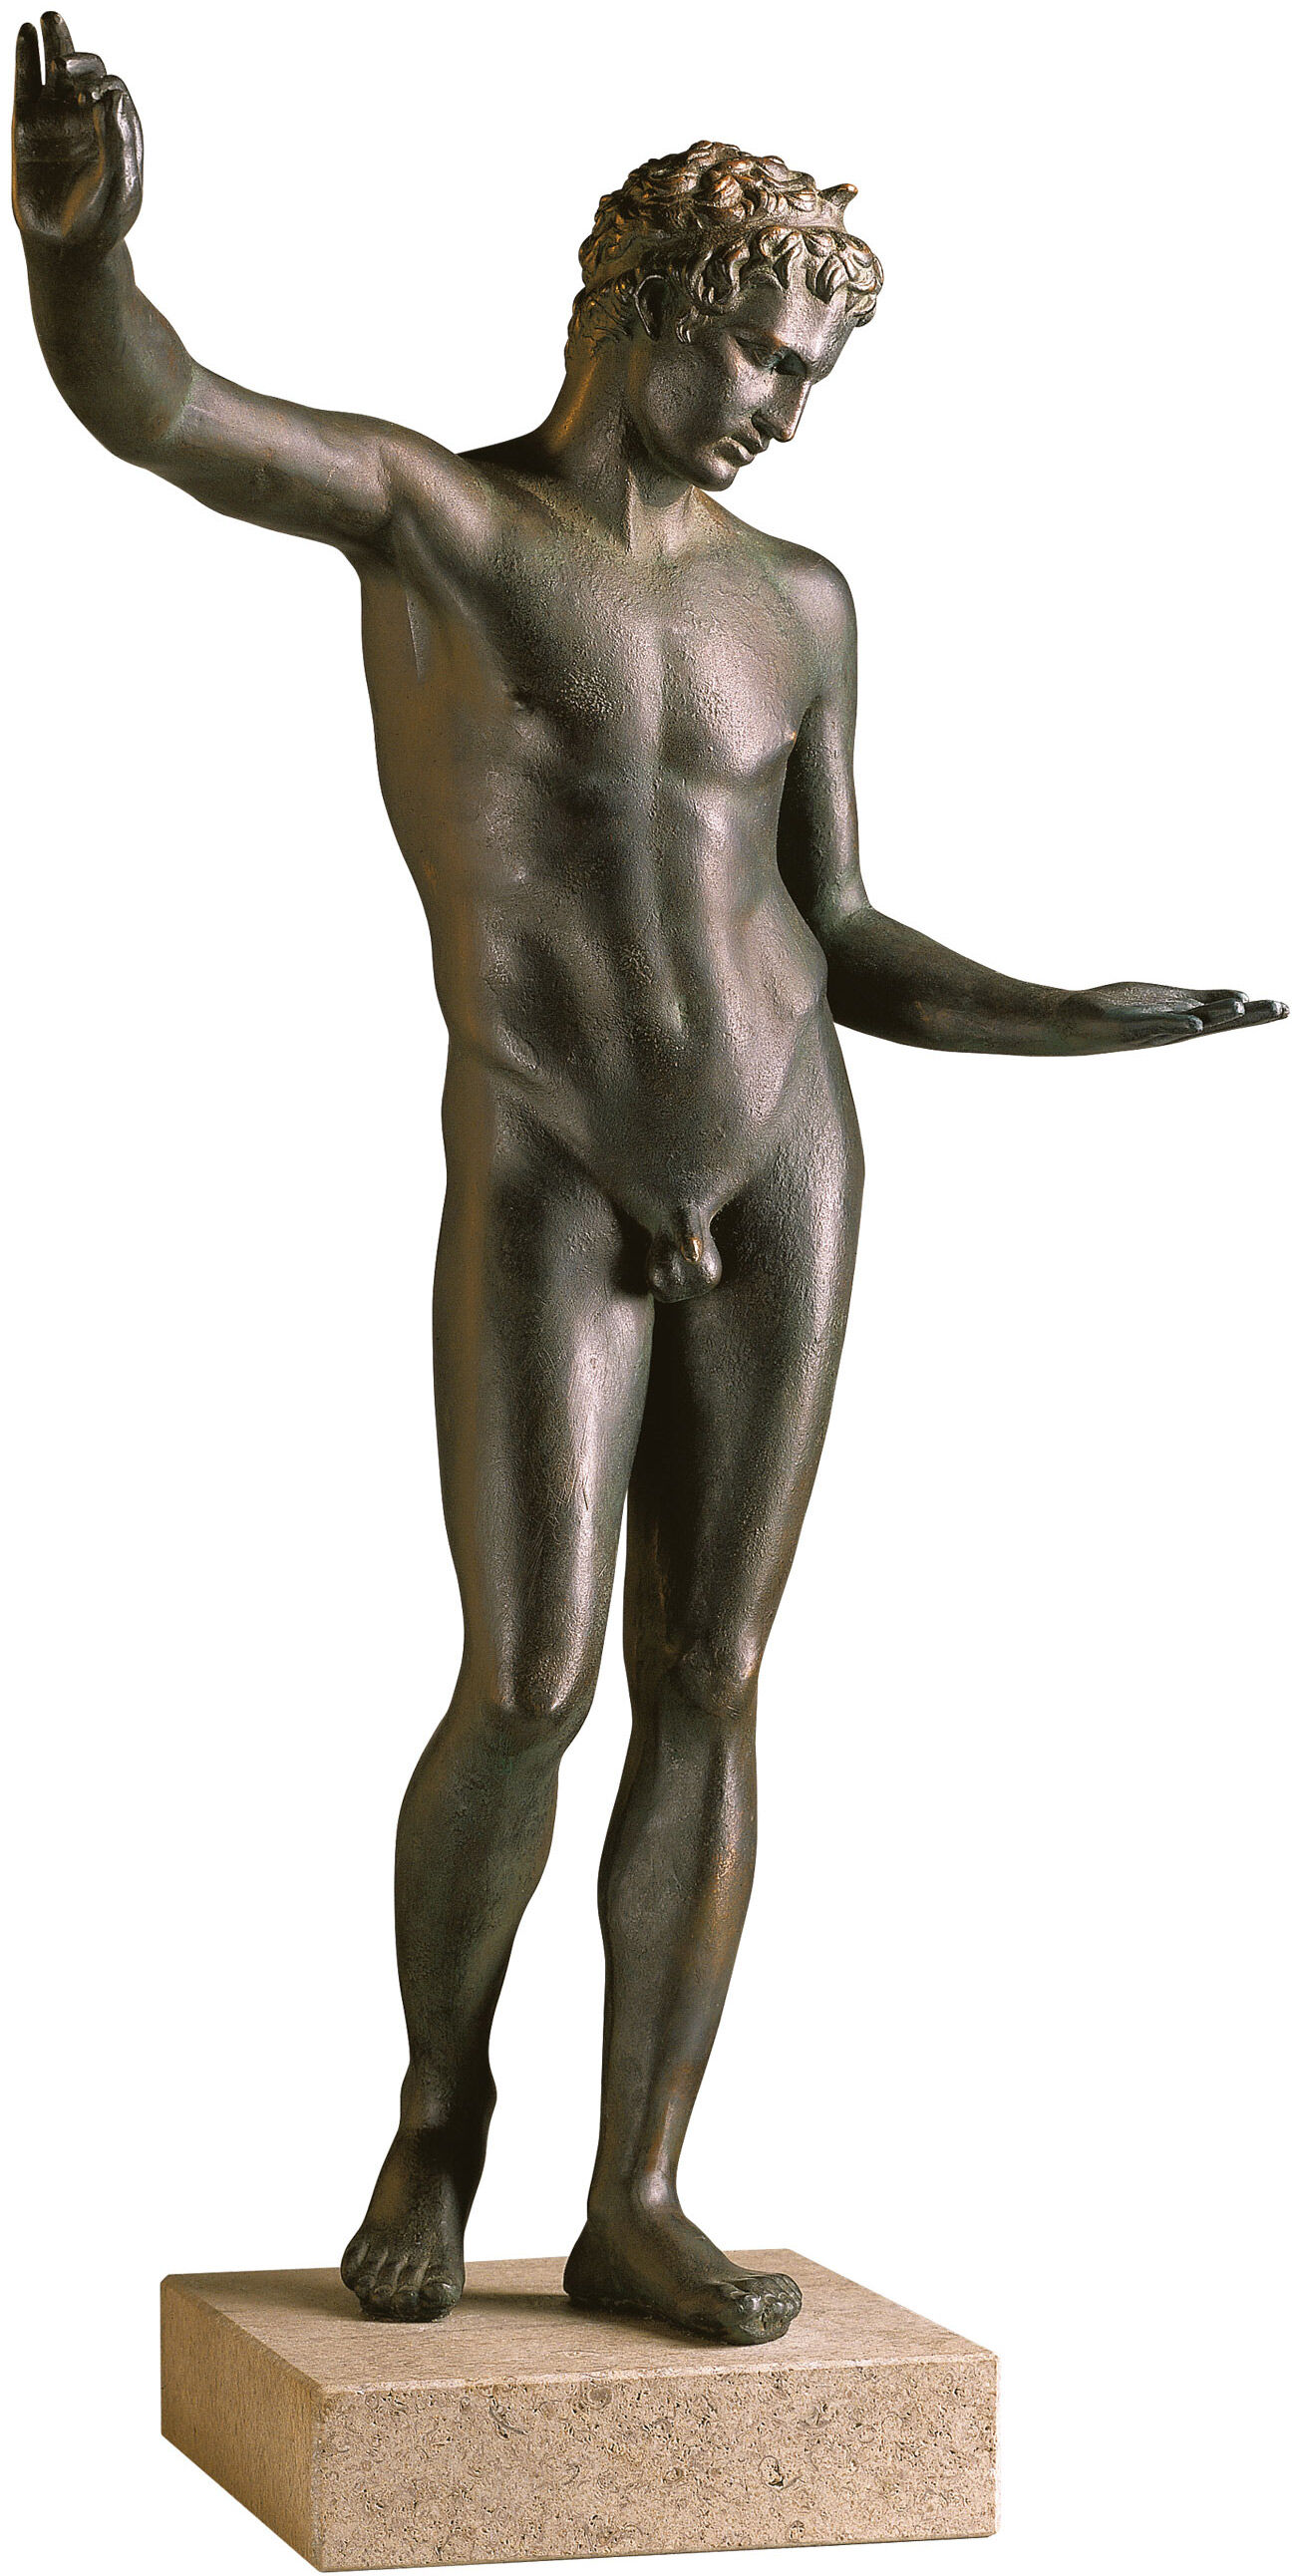 Statuen "Marathons ungdom" (reduktion) von Praxiteles